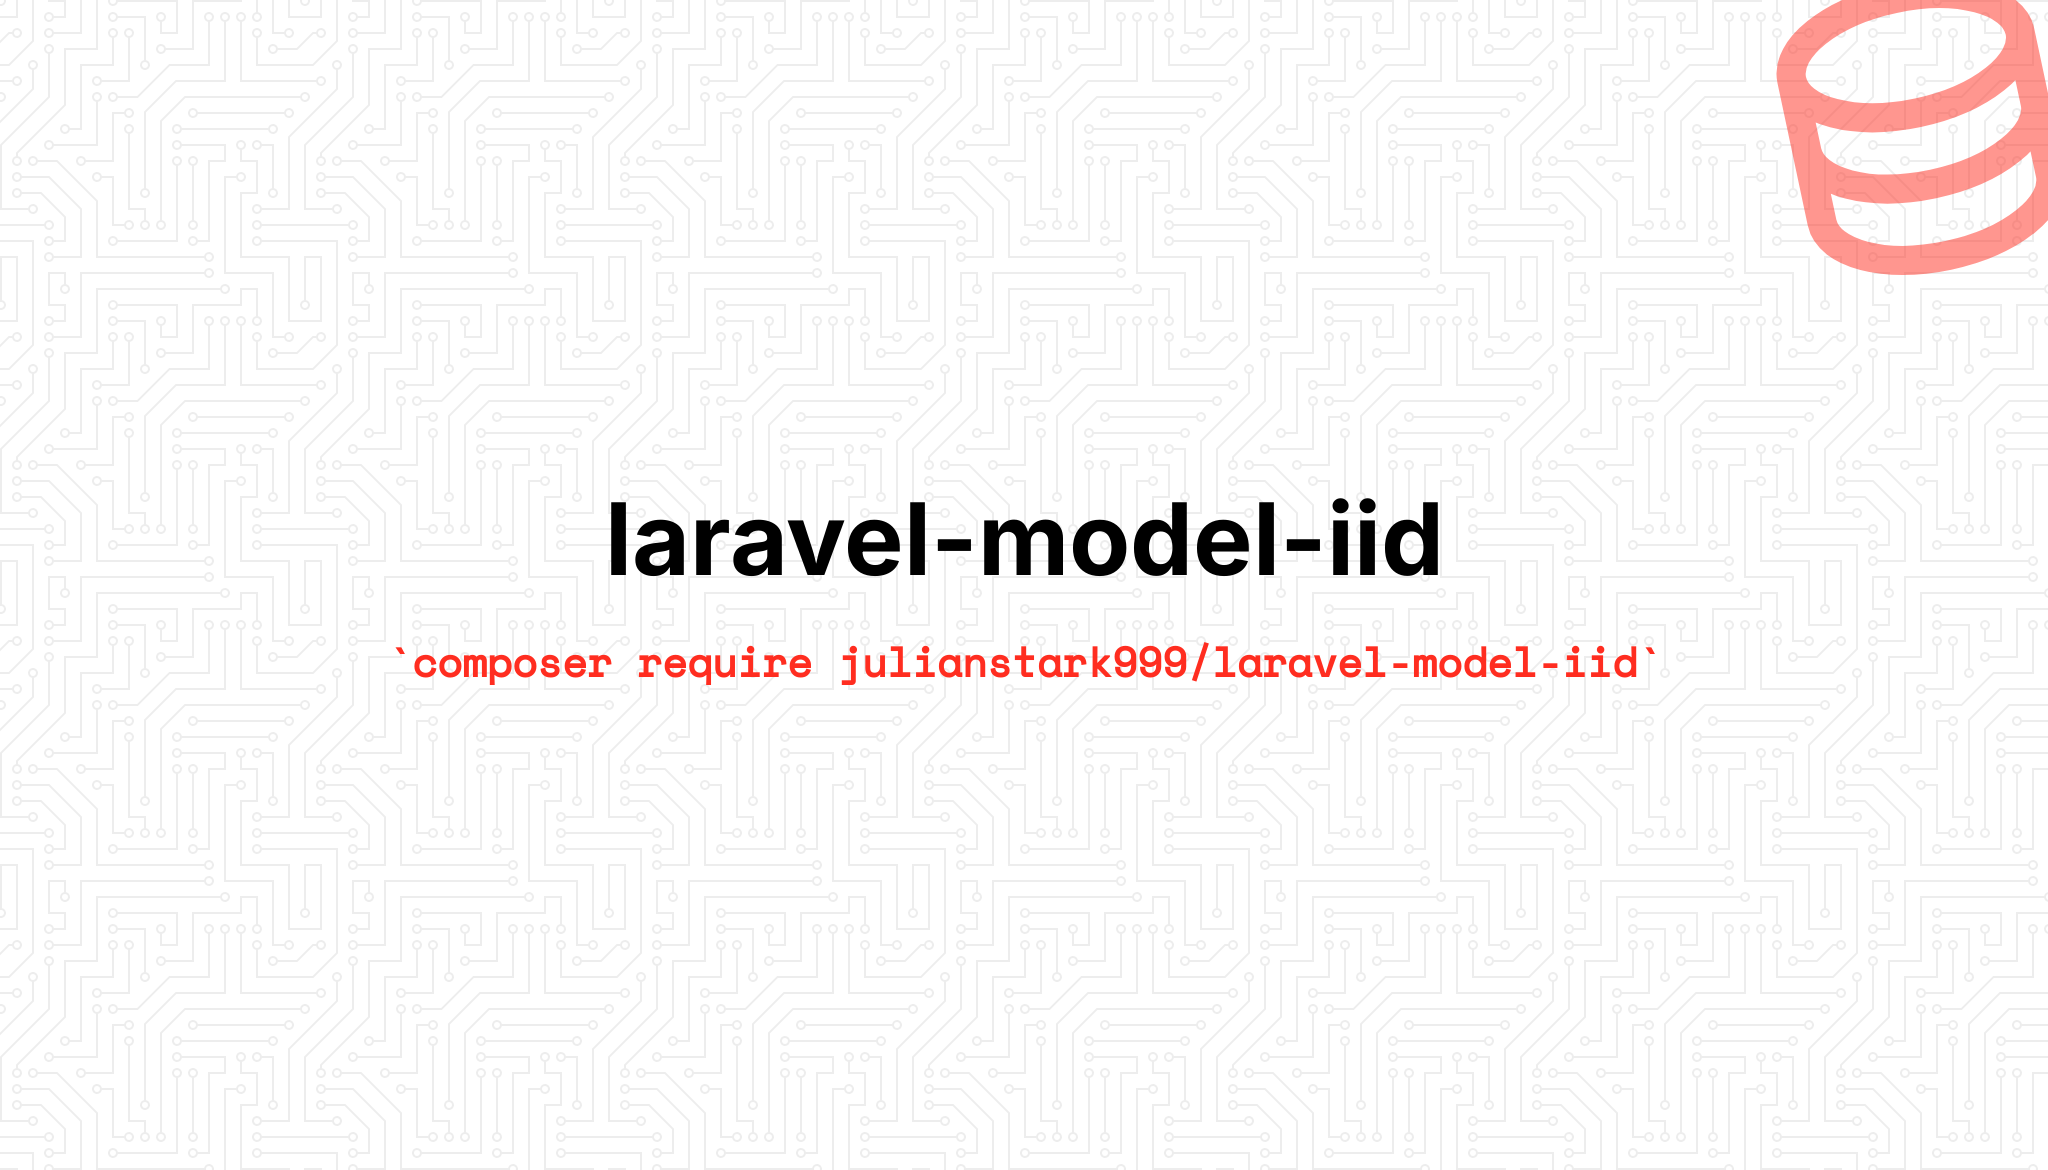 Social Card of Laravel Model Iid